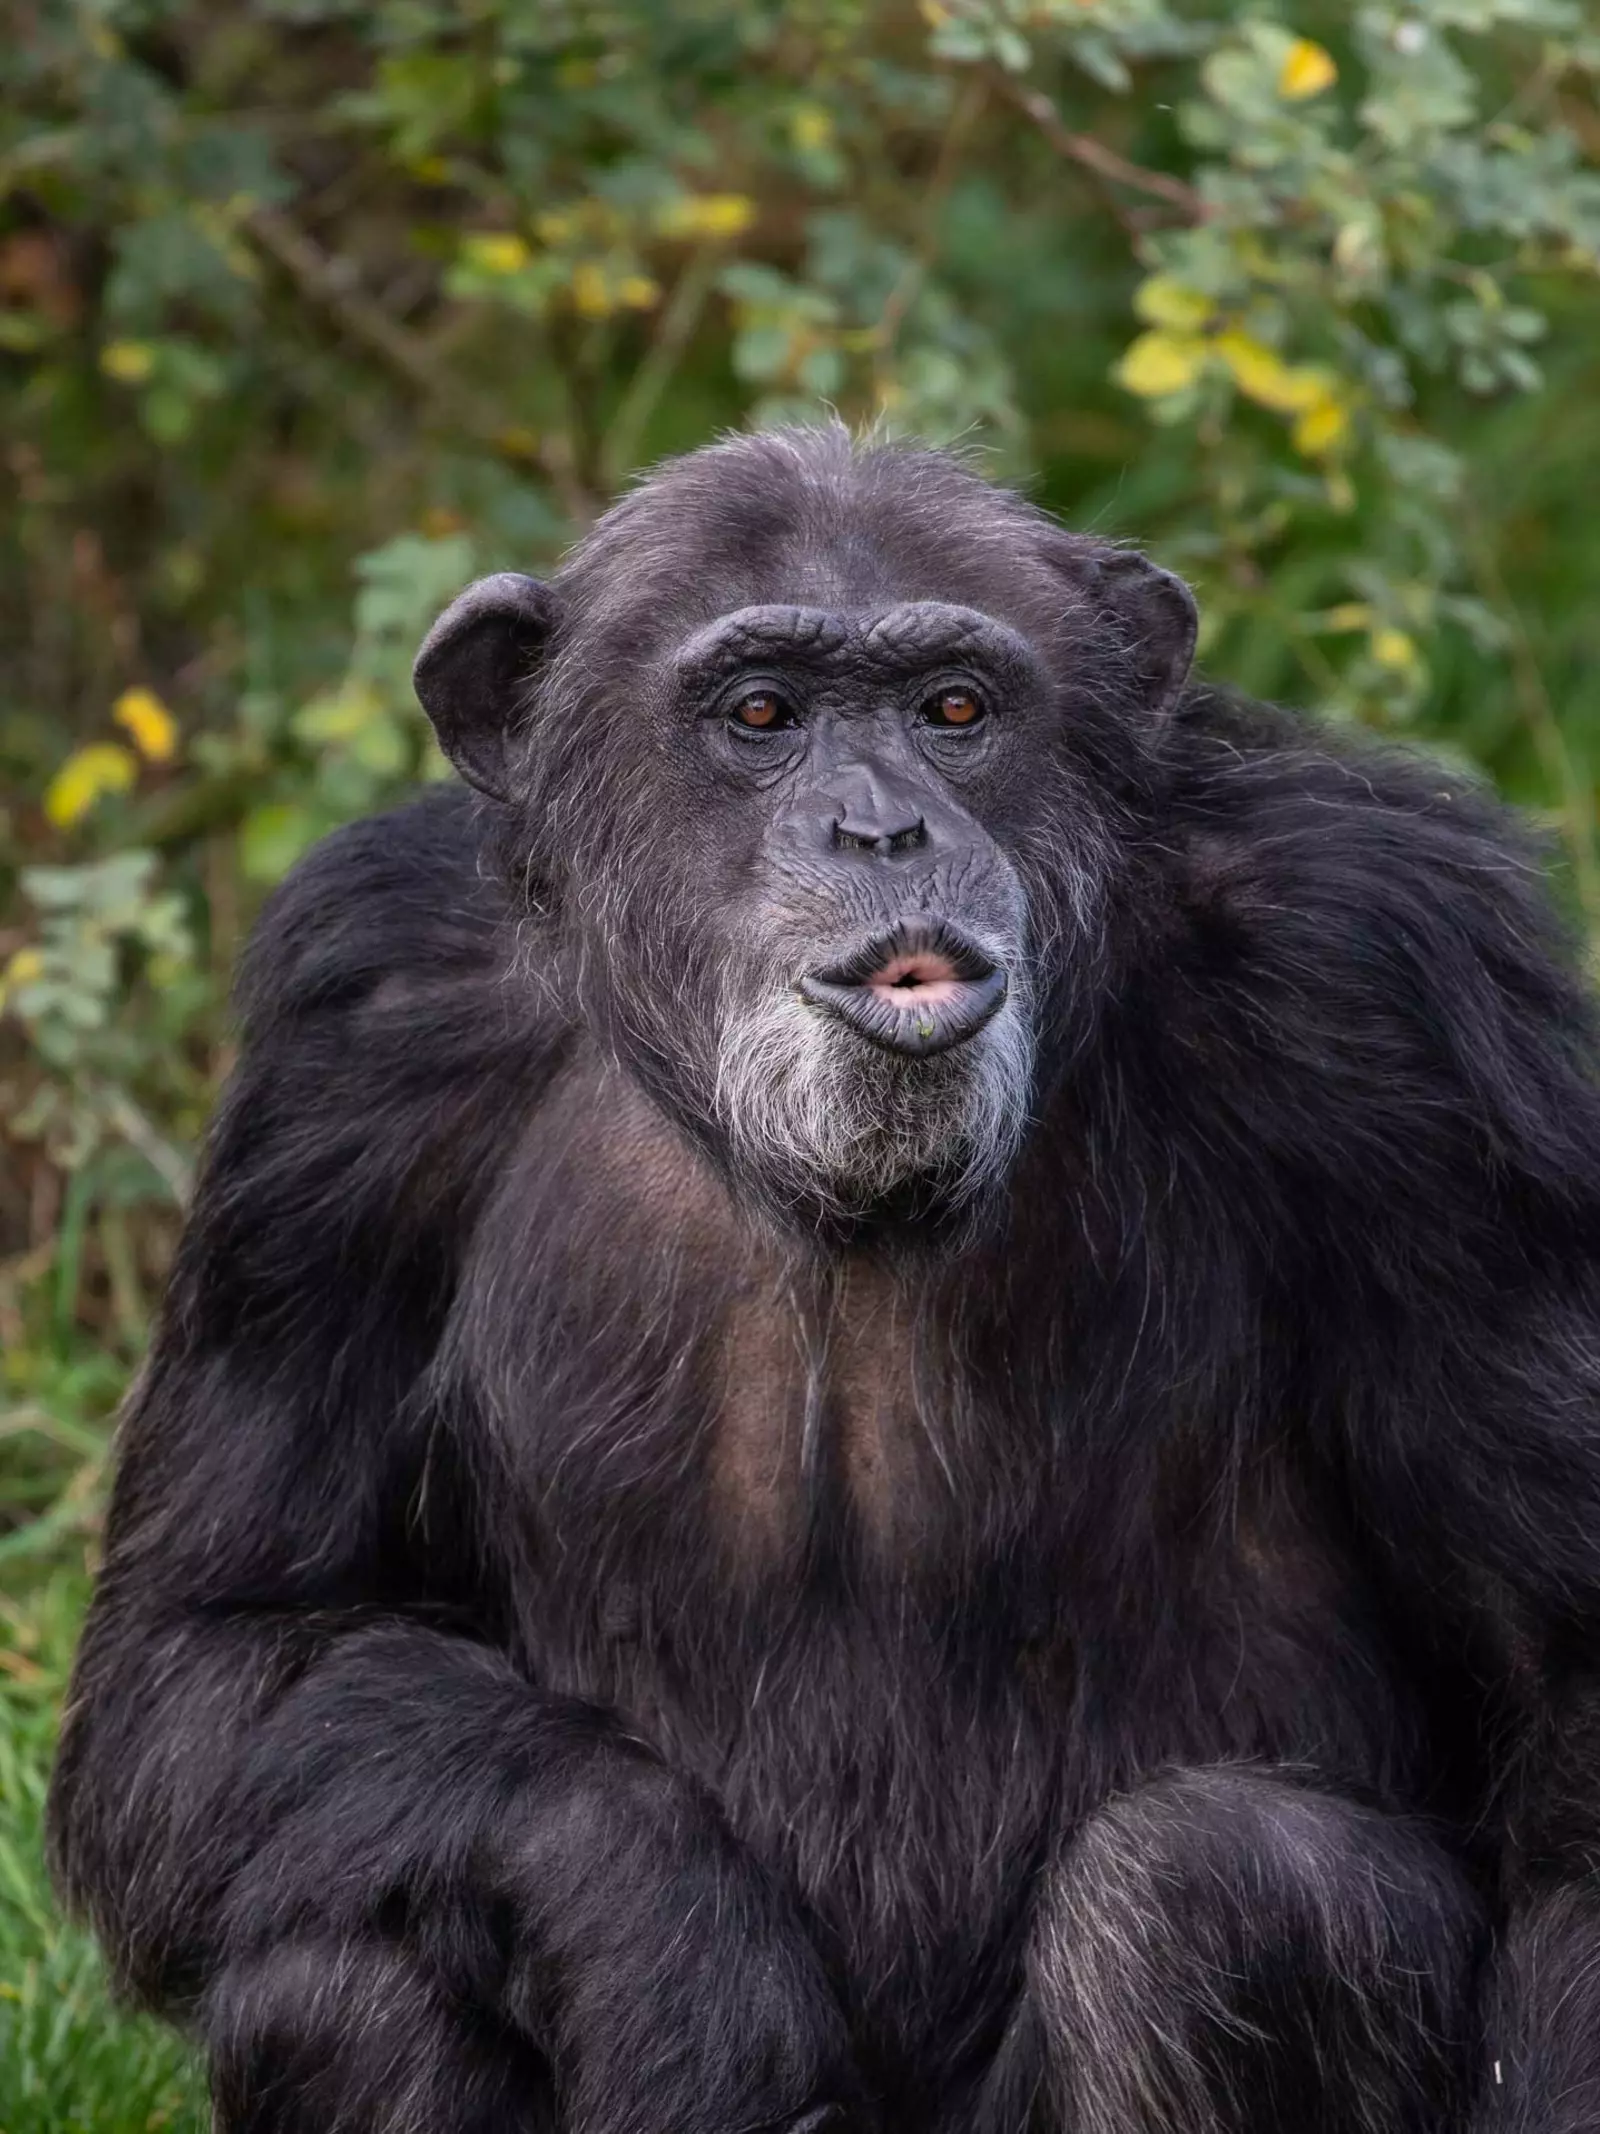 Koko the chimp at Whipsnade Zoo